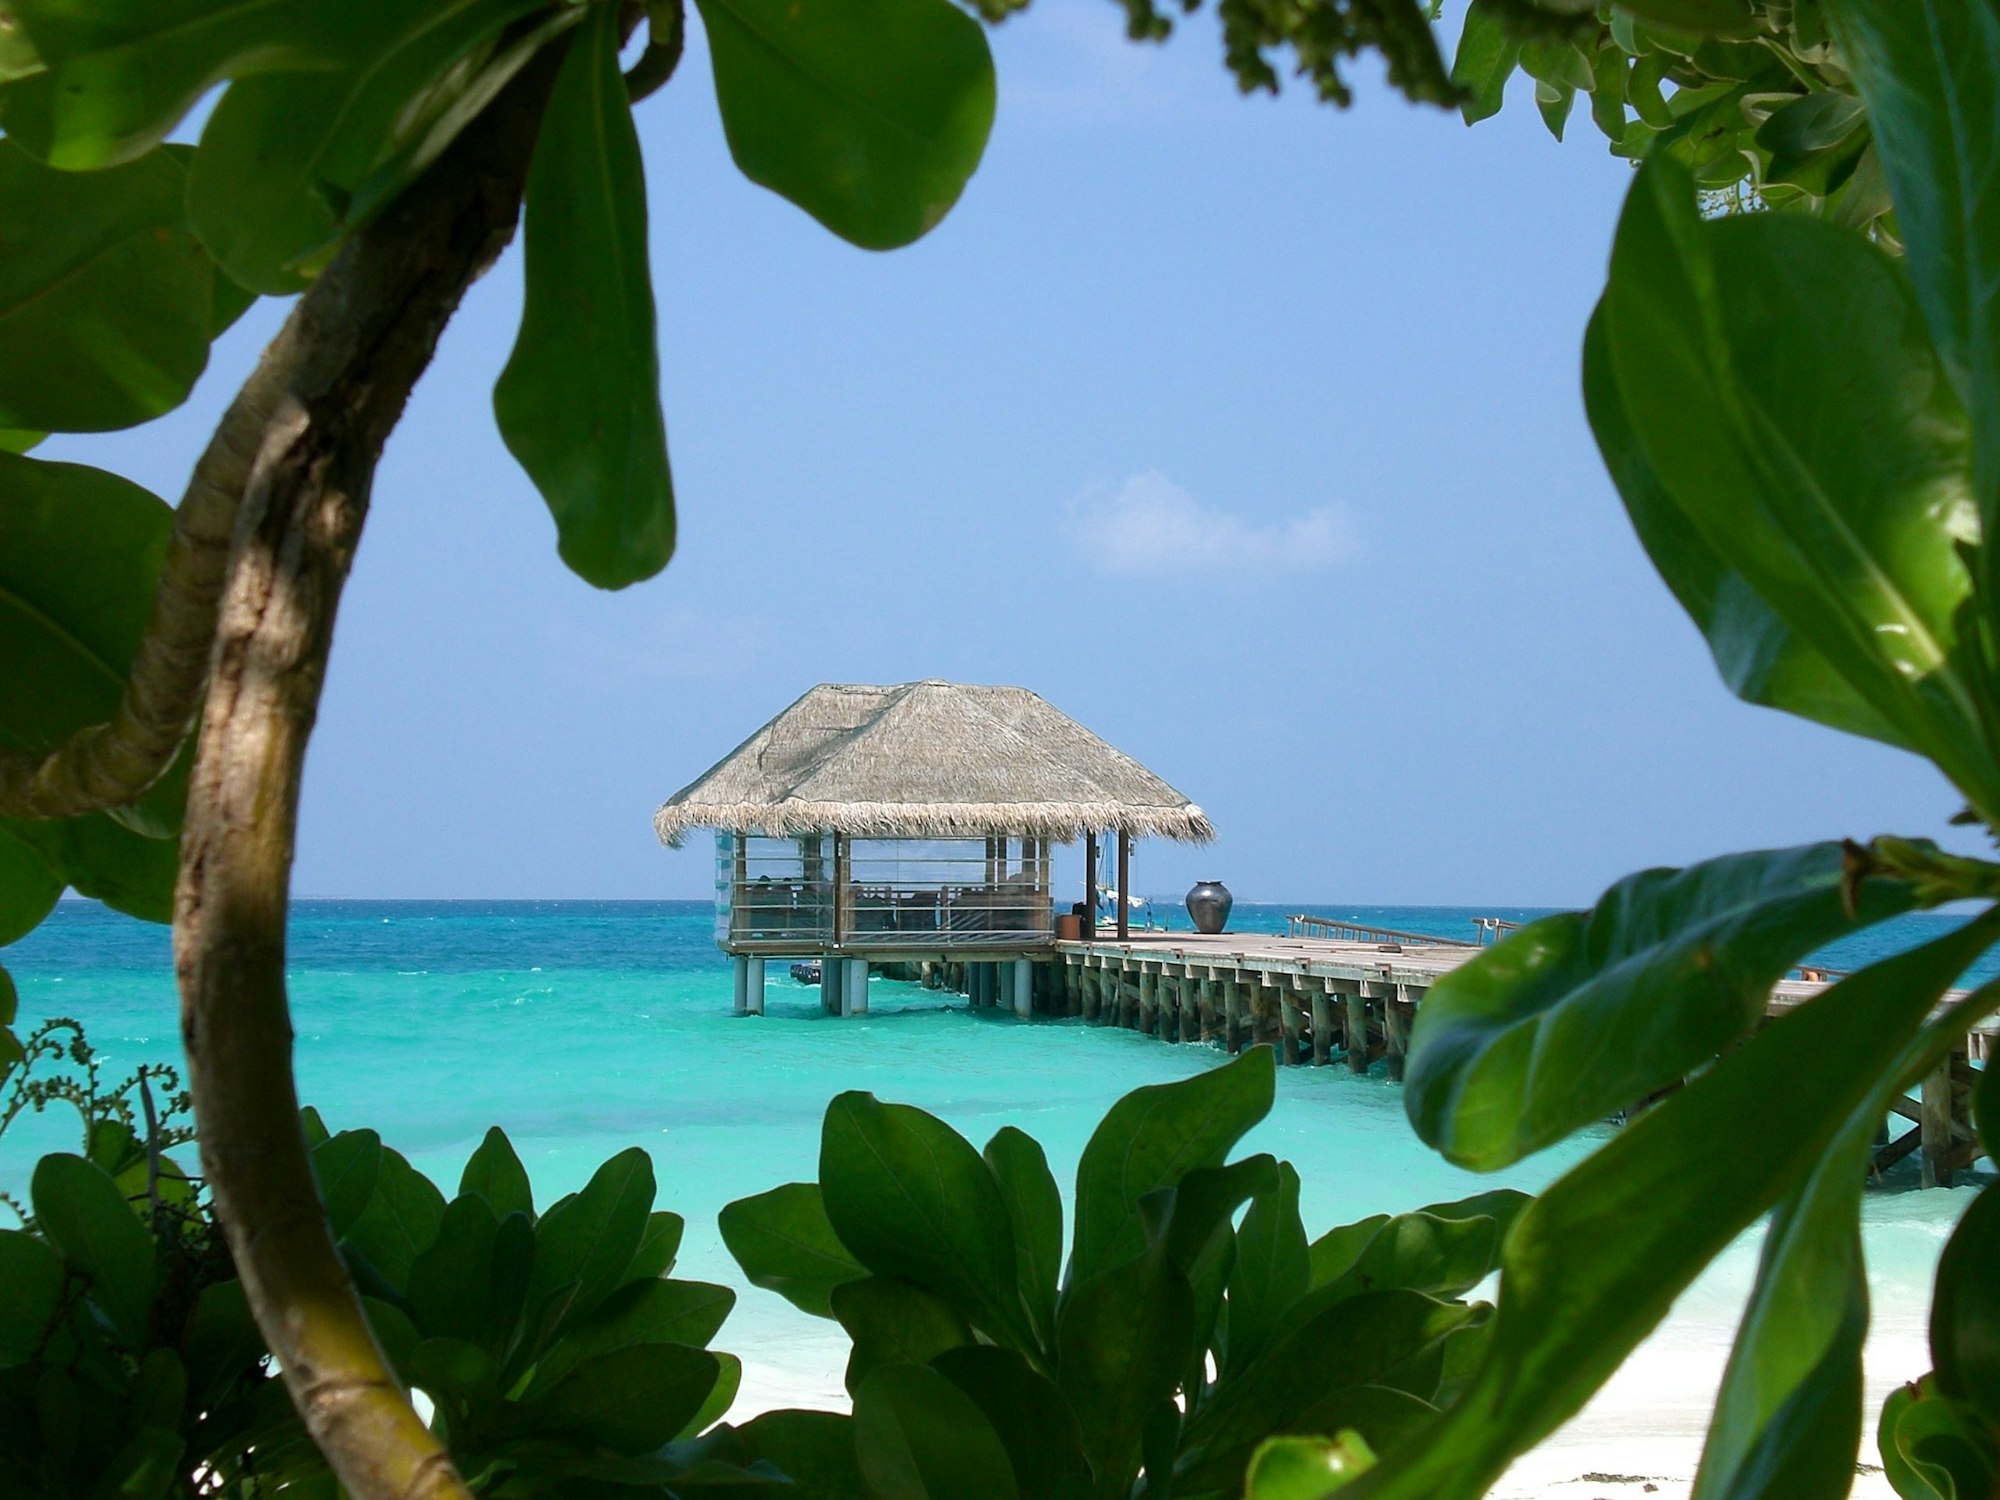 Der Anlegeplatz für die Wasserflugzeuge eines Ressorts auf den Malediven.